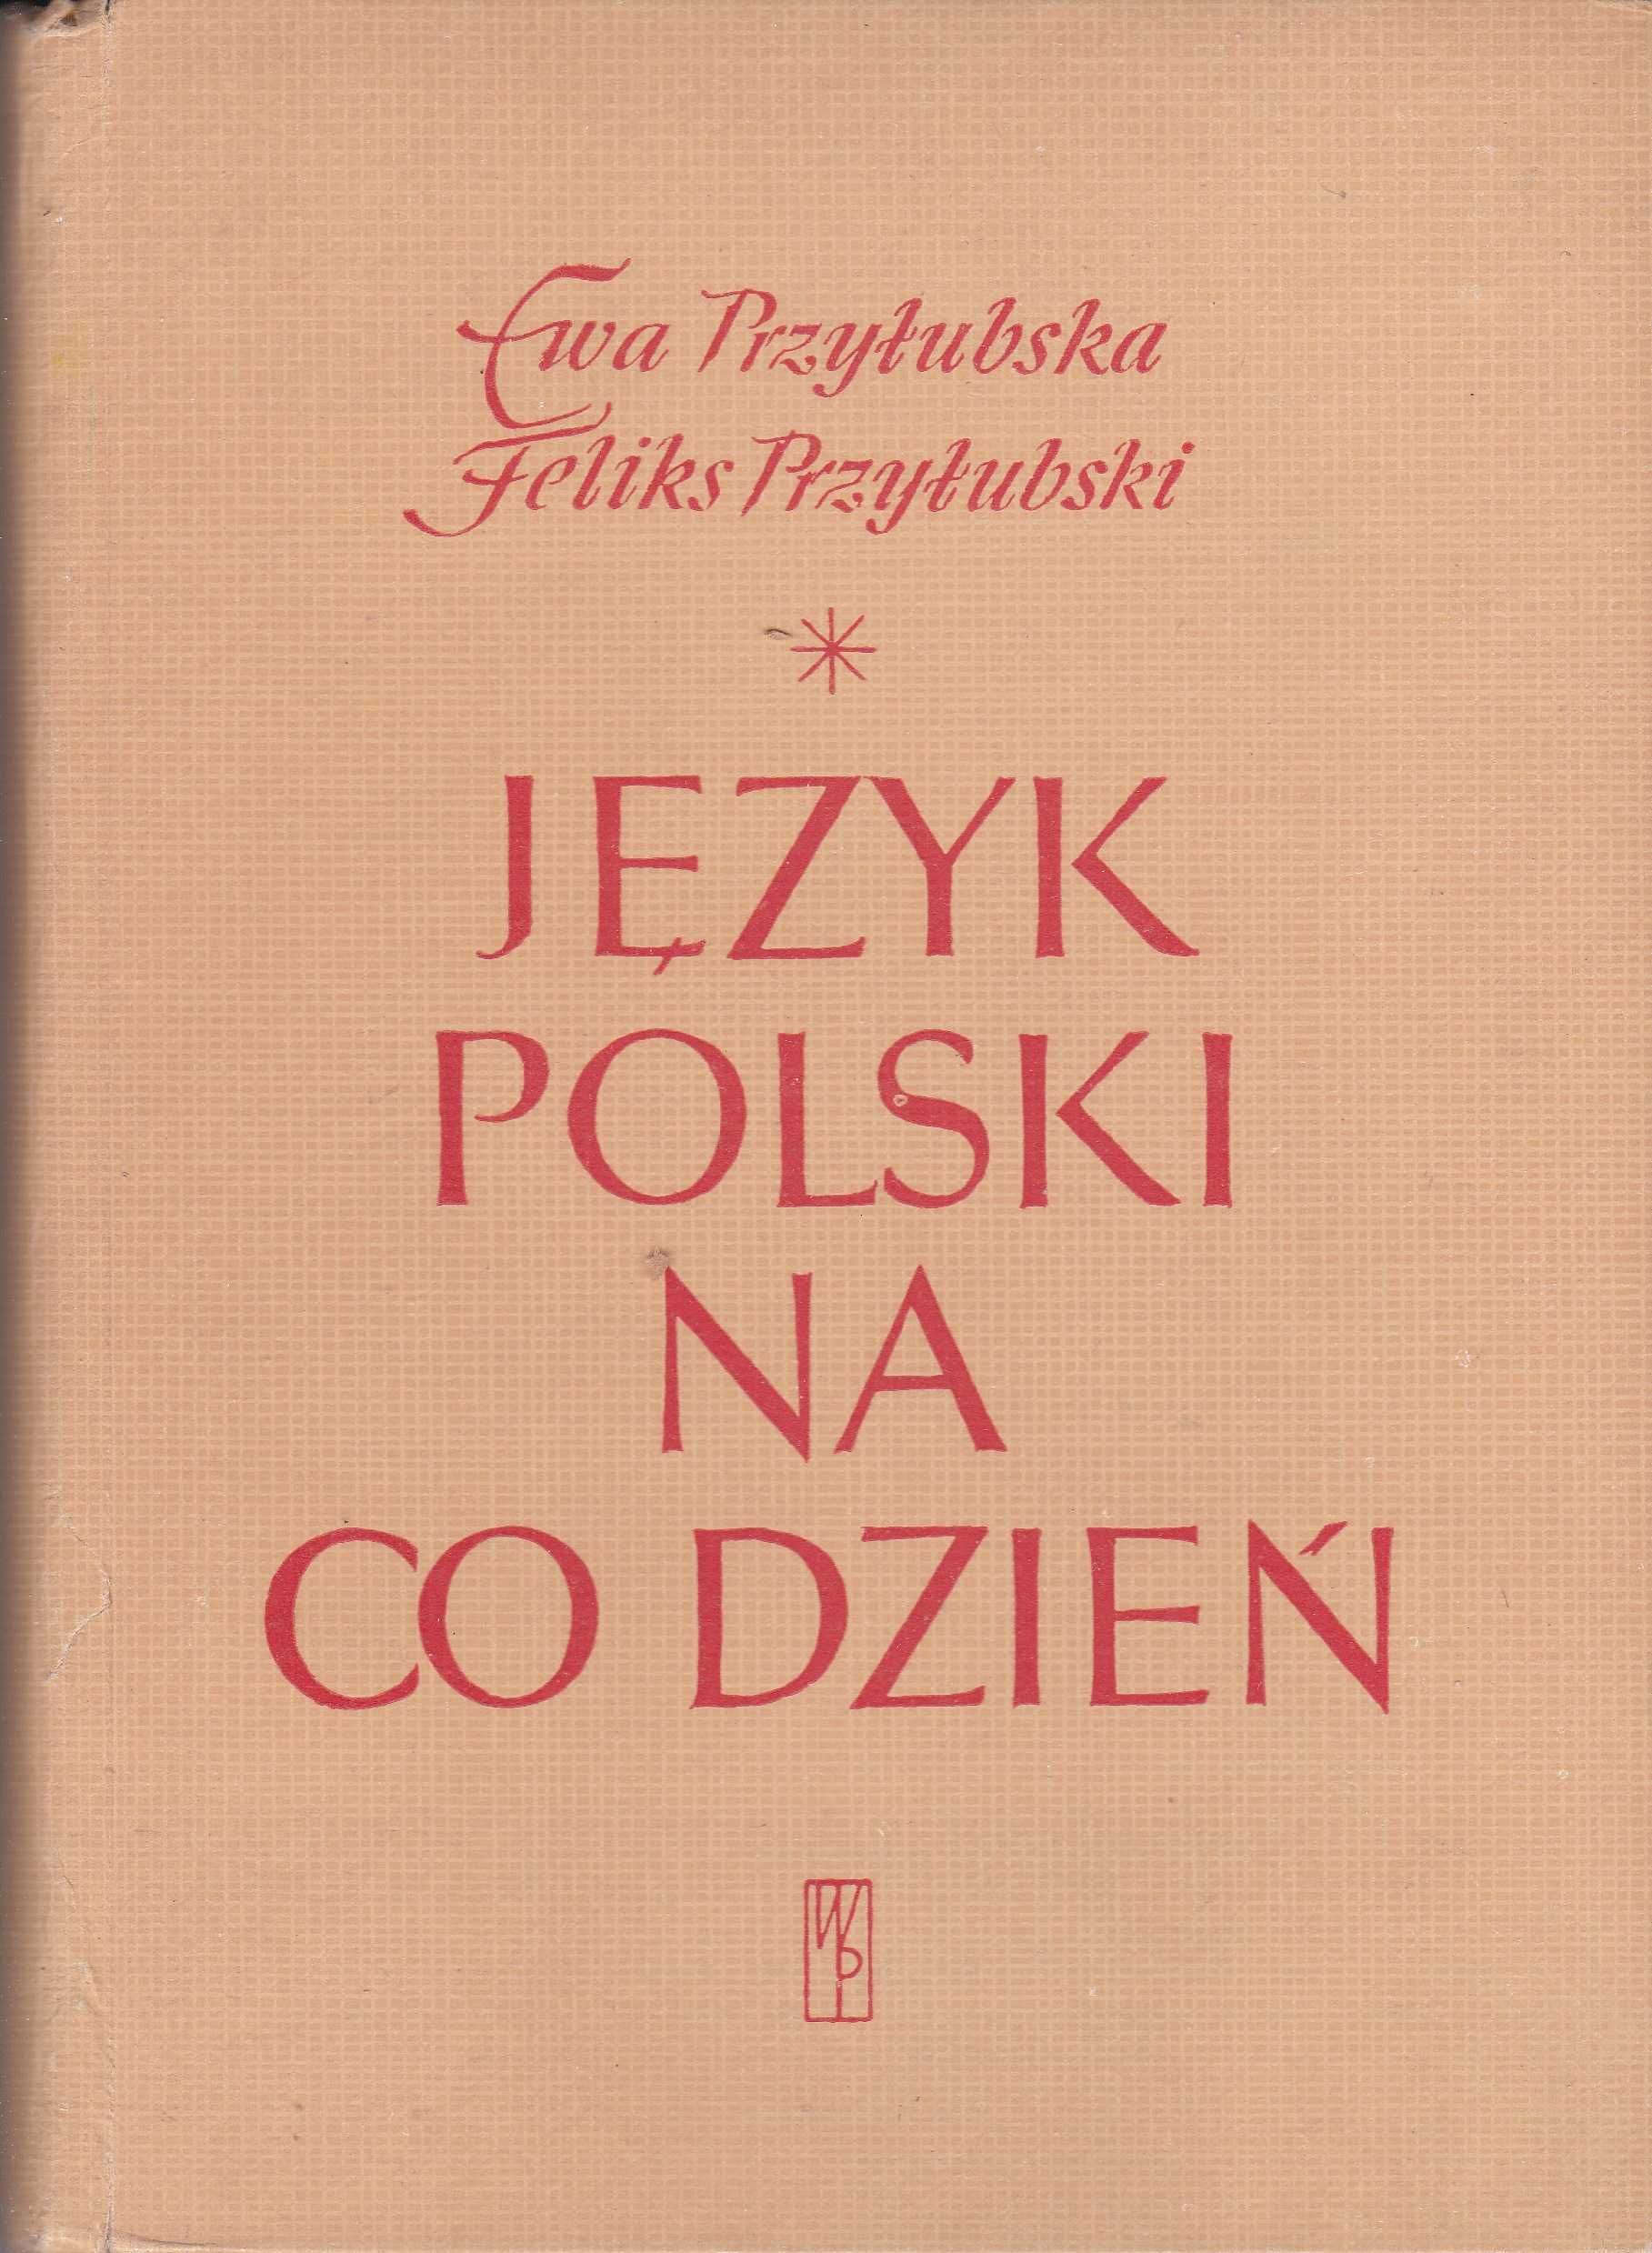 Język polski na co dzień. E. Przyłubska, F. Przyłubski